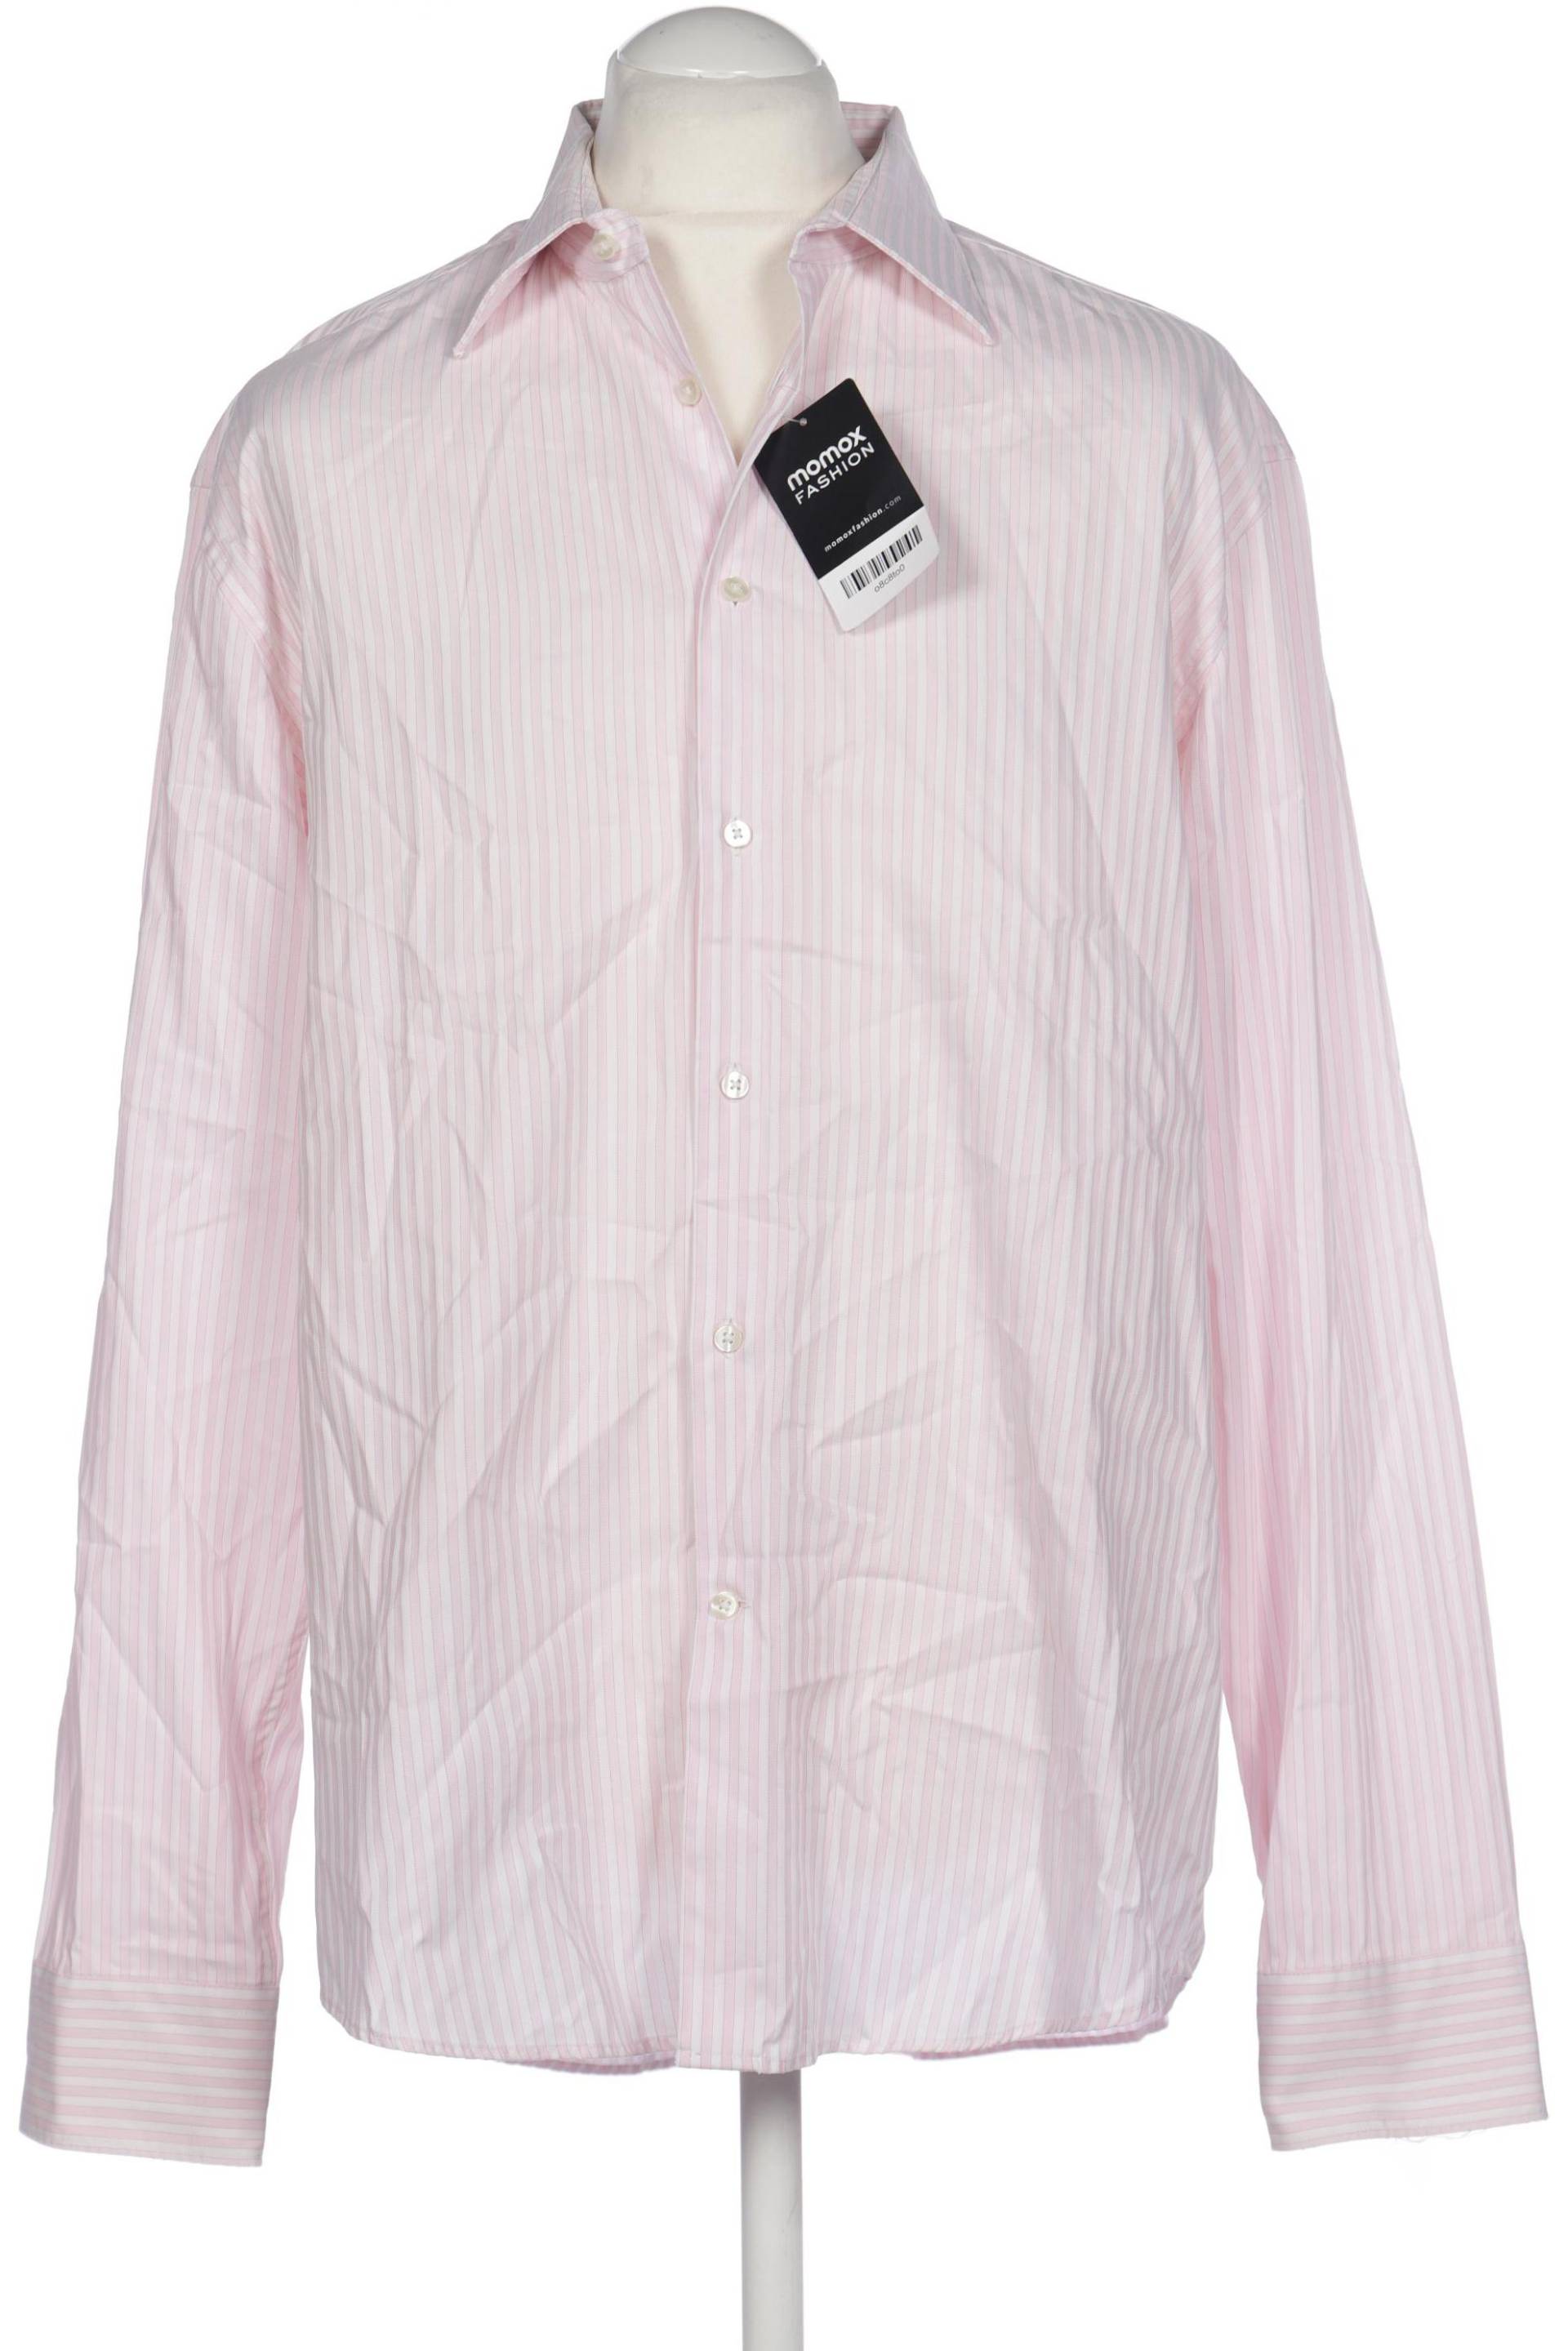 Jacques Britt Herren Hemd, pink von Jacques Britt